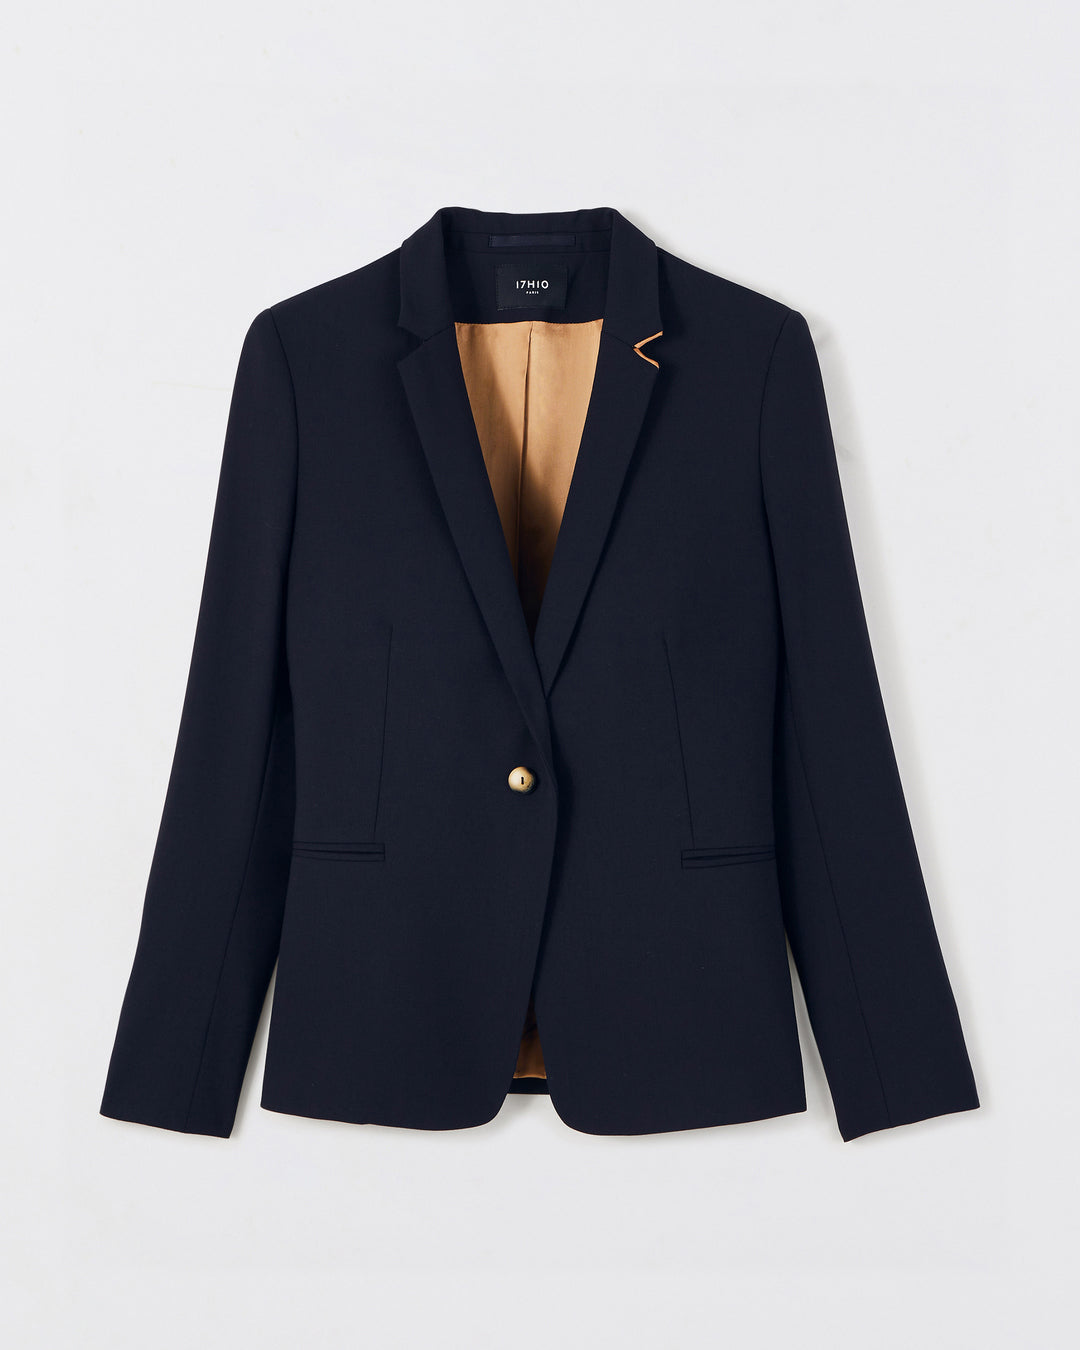 Paris suit jacket - Bleu Nuit super 120's